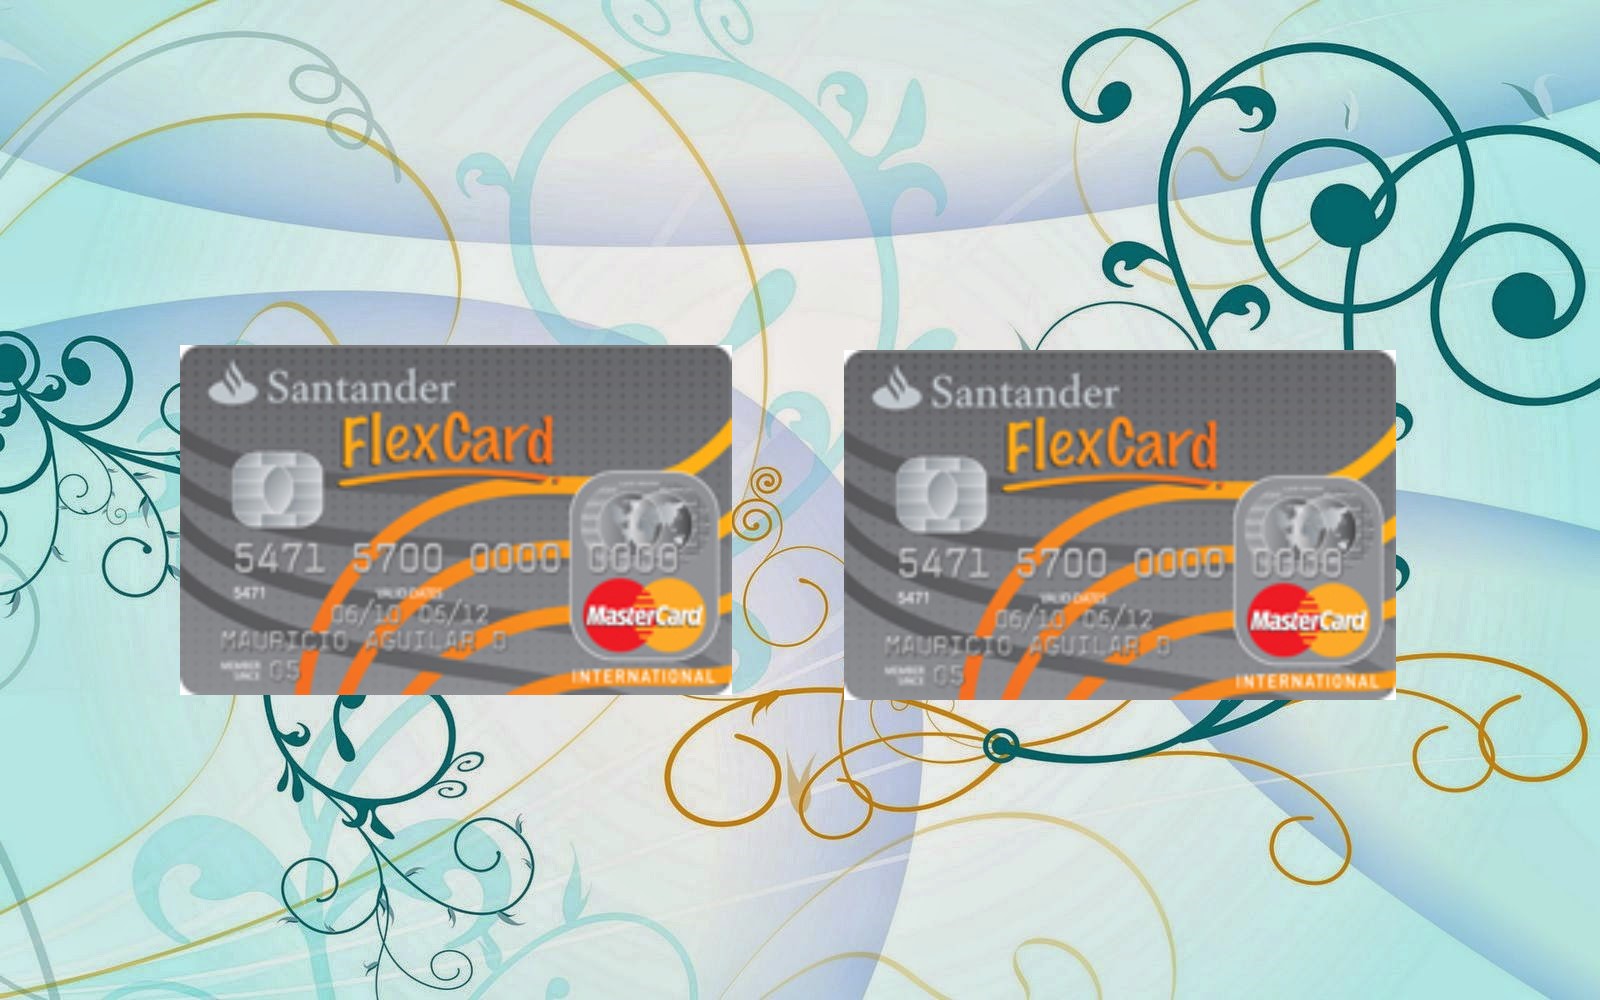 Tarjeta de crédito Flex Card del banco Santander sin historial crediticio